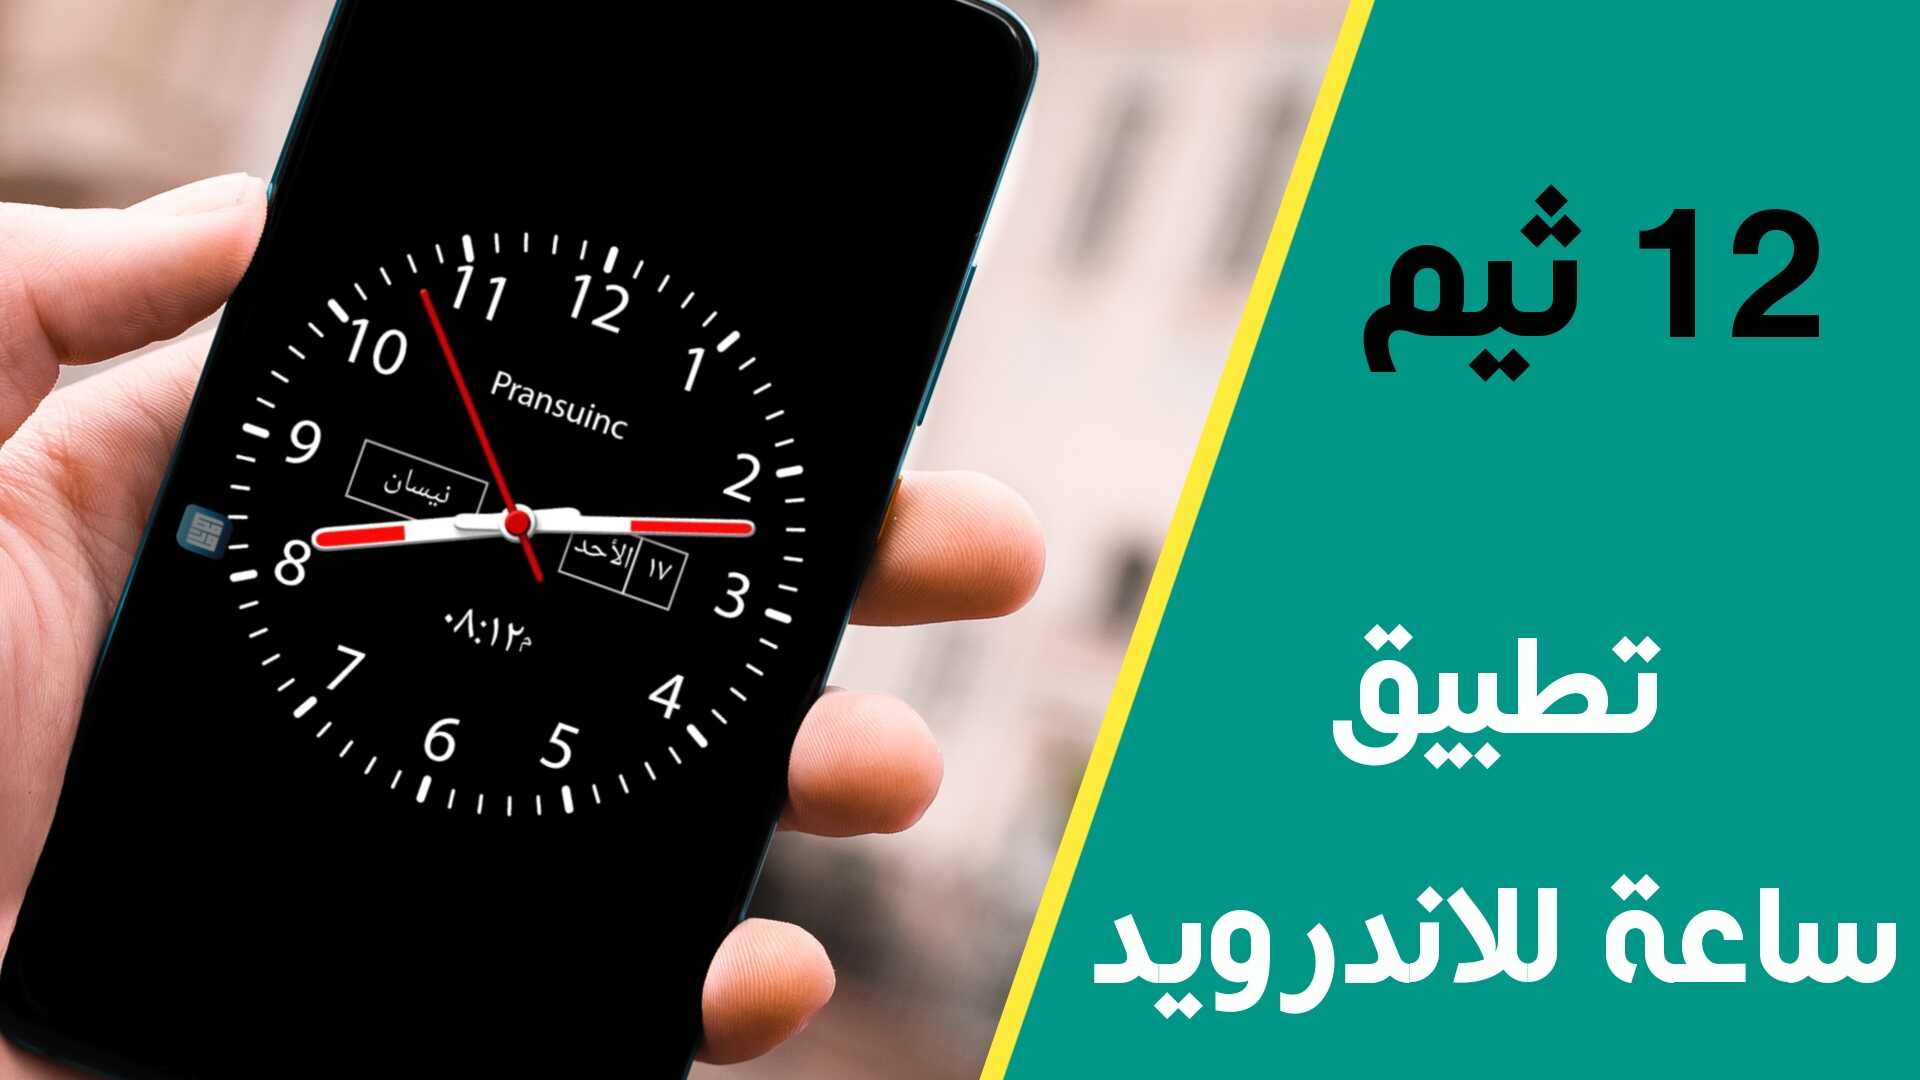 تطبيق ساعة للاندرويد مع 12 ثيم ساعة عقارب لجوال Android